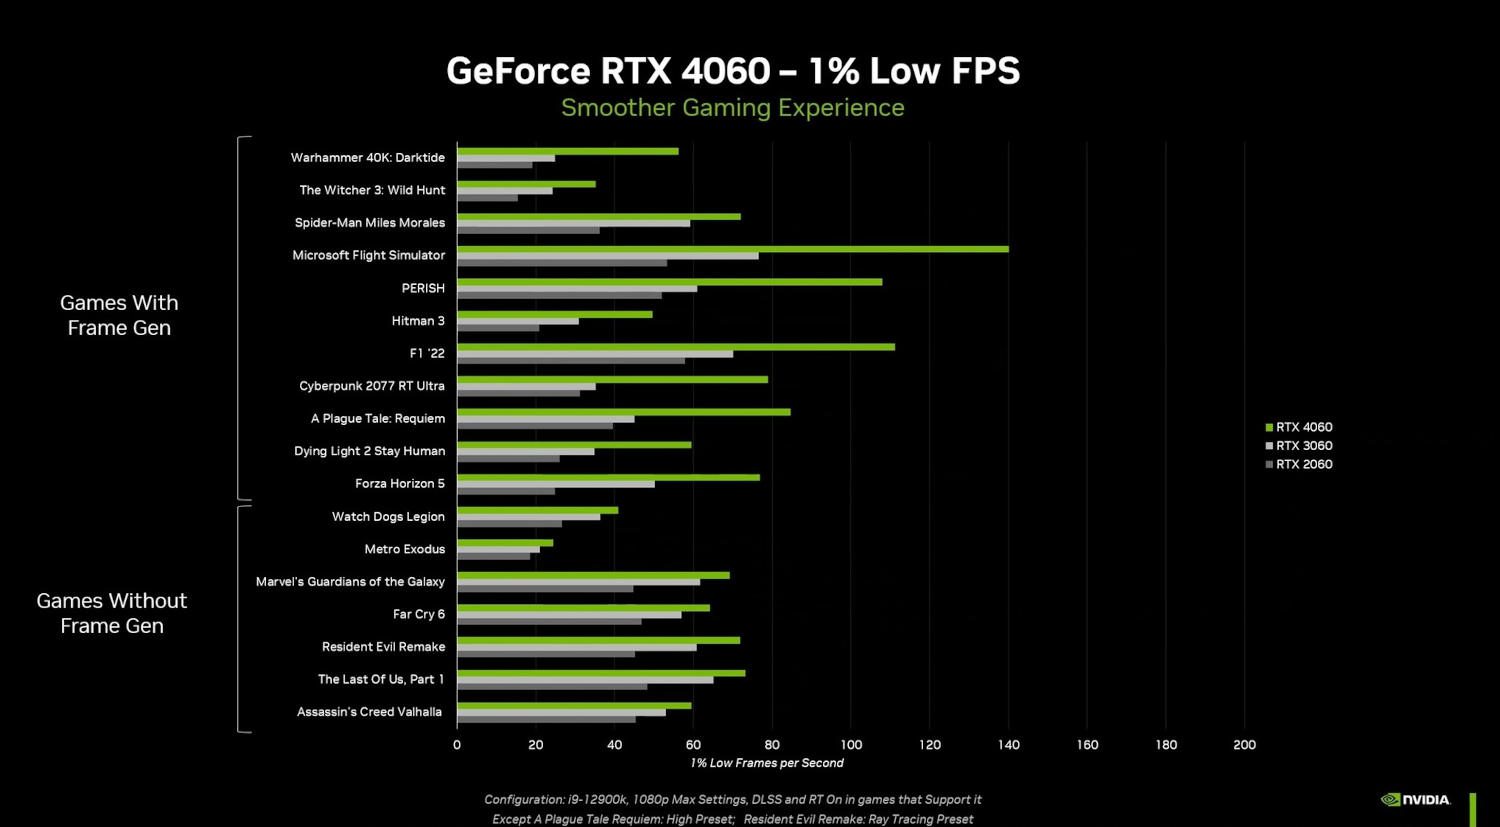 wydajność geforce rtx 4060 w grach i wynik 1% low fps